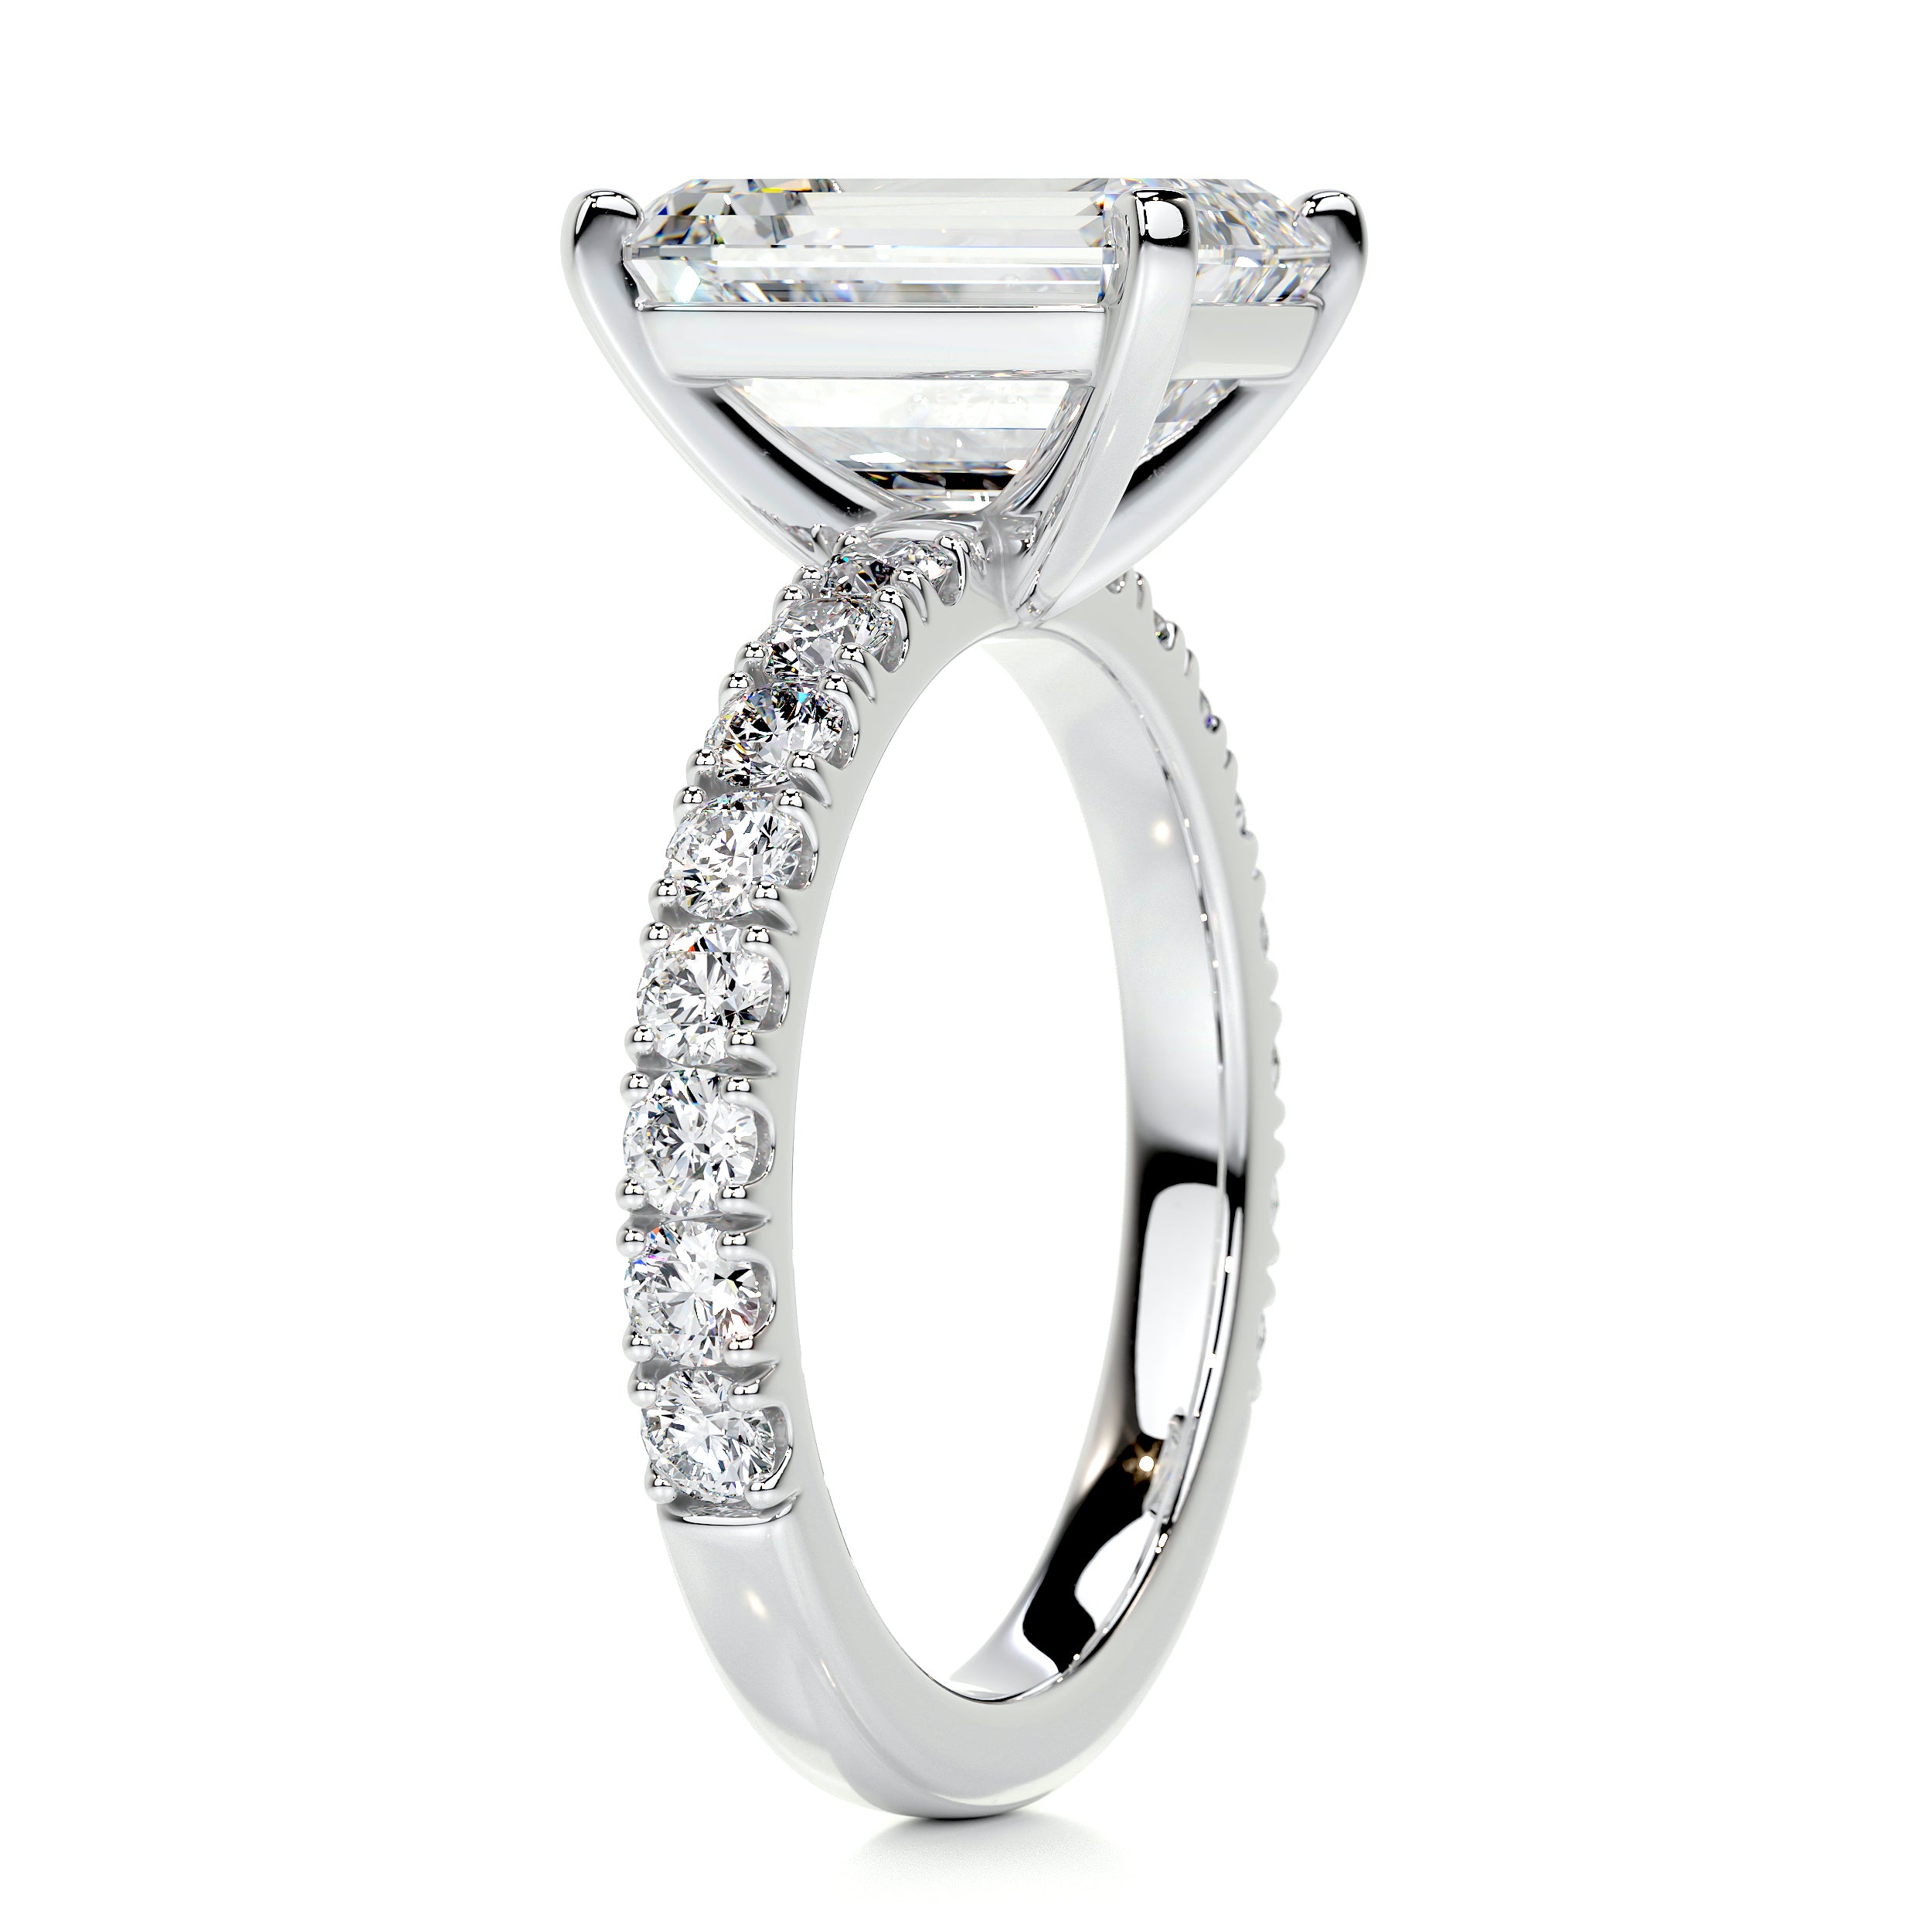 Royal Diamond Engagement Ring   (3.5 Carat) -Platinum